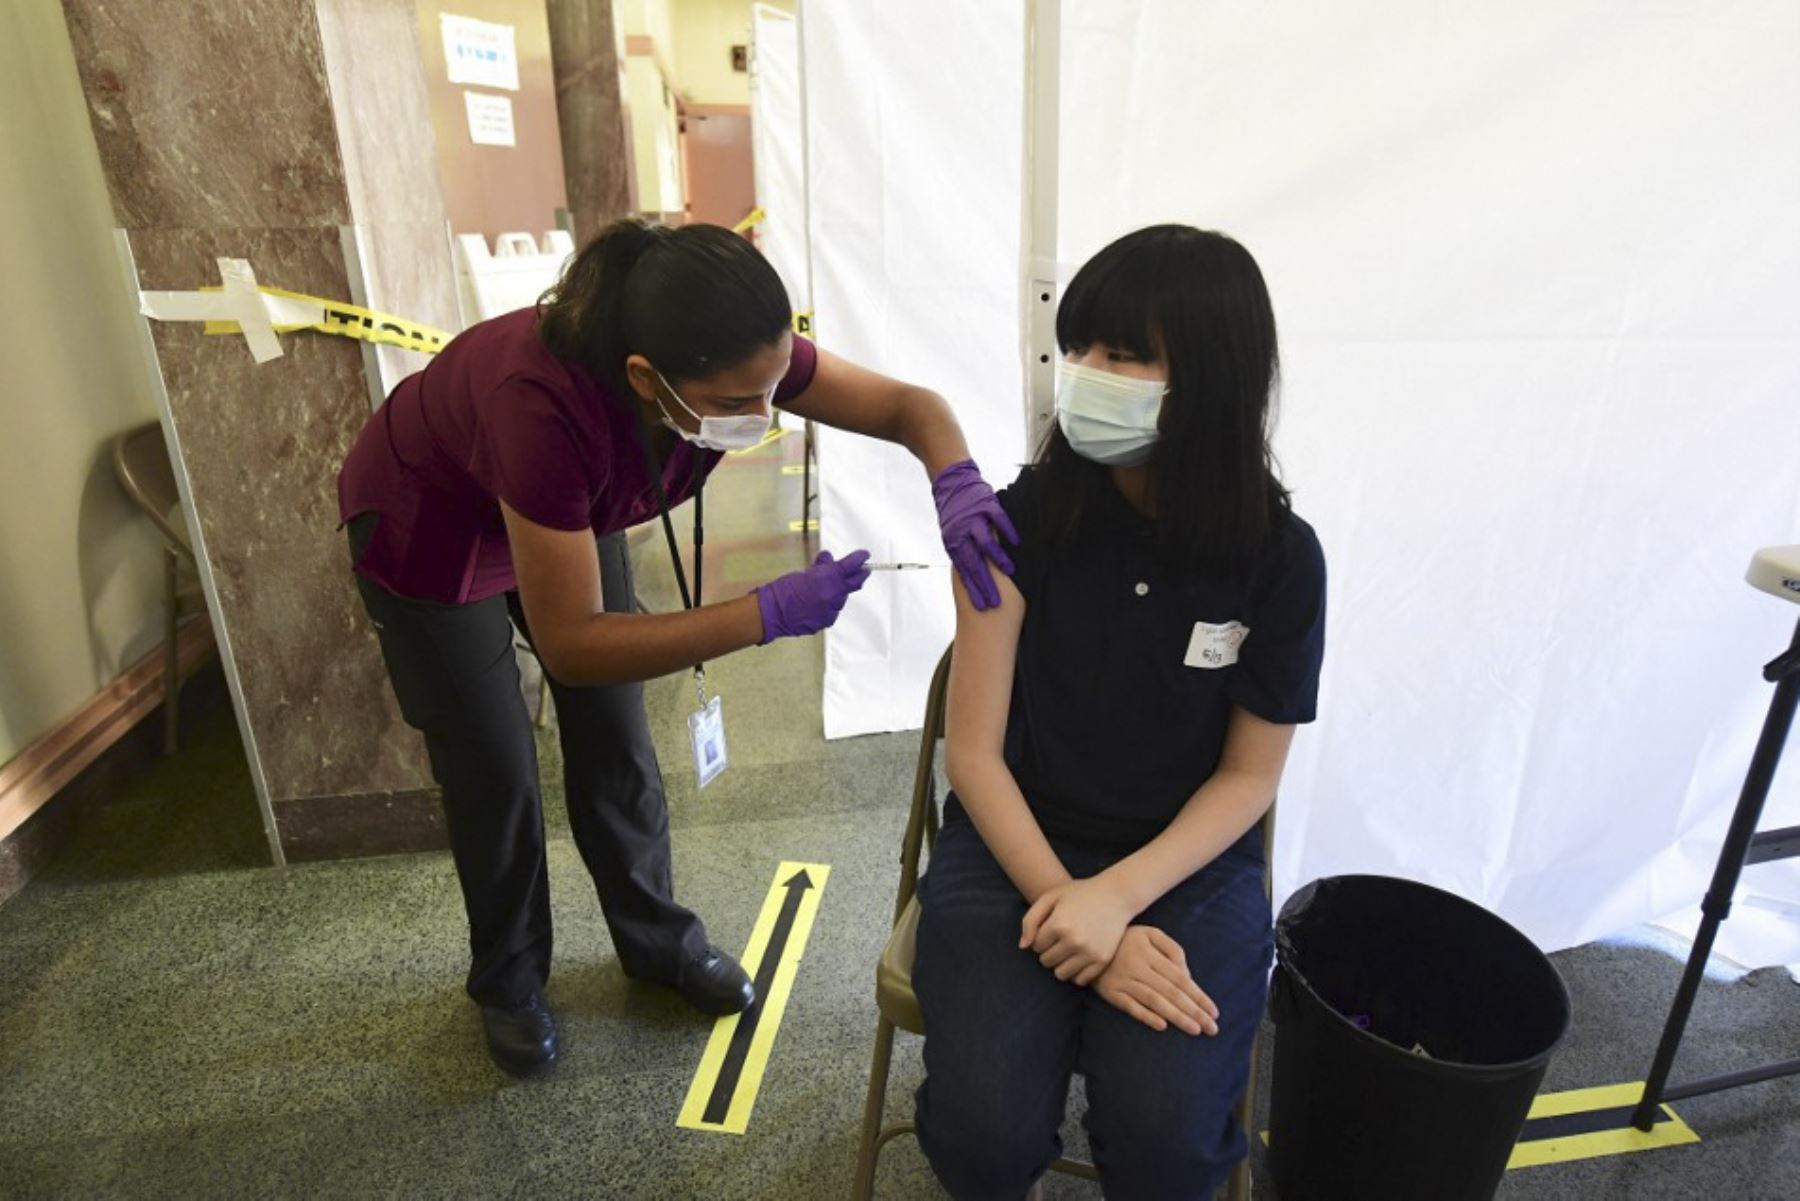 Nham La Man Nhi, de 13 años, recibe su vacuna Covid-19 administrada por la asistente médica Karina Cisneros del St. John